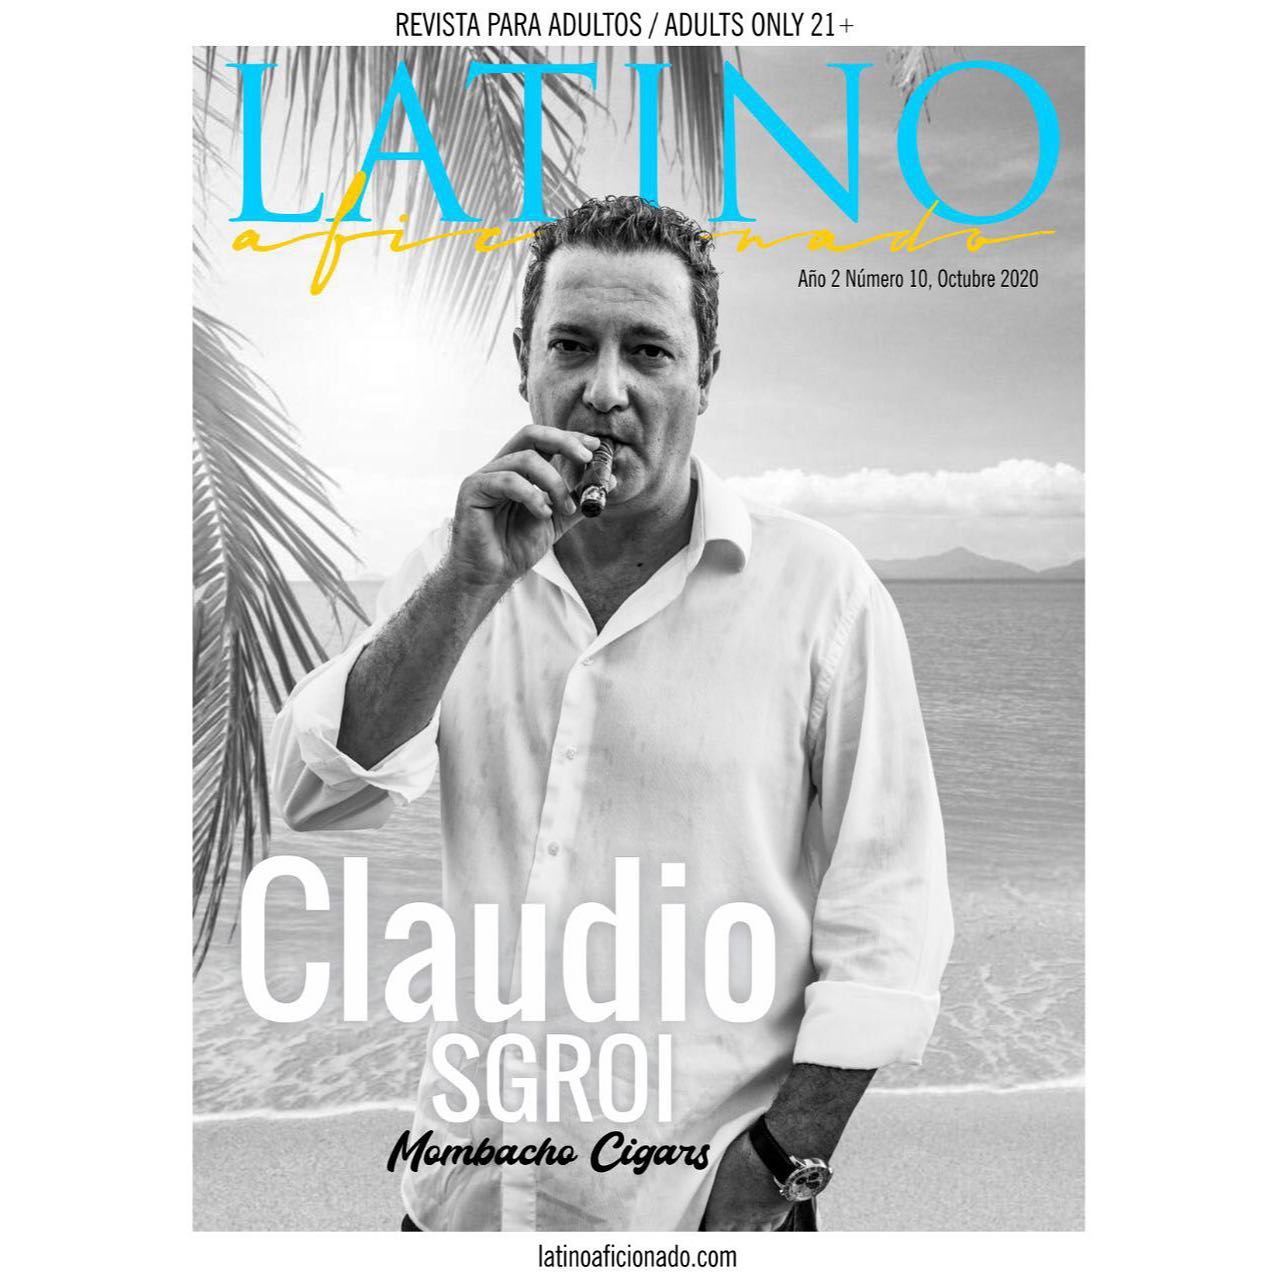 Acabou de sair a nova edição da revista “Latino Aficionado”, e desta vez, traz na capa Claudio Sgroi, da Mombacho Cigars